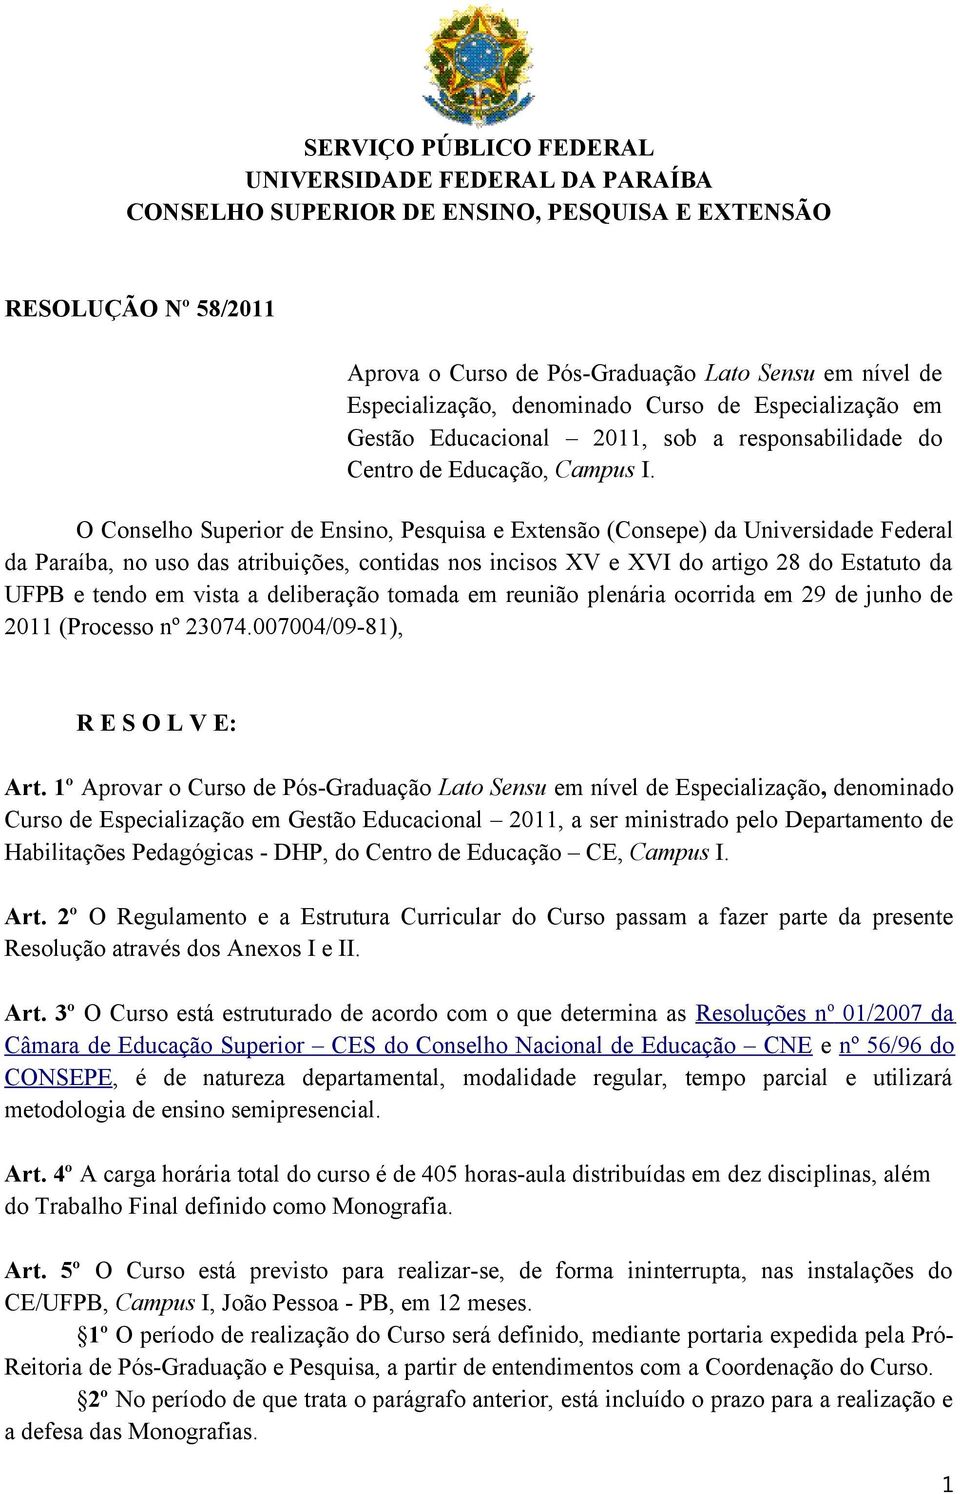 O Conselho Superior de Ensino, Pesquisa e Extensão (Consepe) da Universidade Federal da Paraíba, no uso das atribuições, contidas nos incisos XV e XVI do artigo 28 do Estatuto da UFPB e tendo em